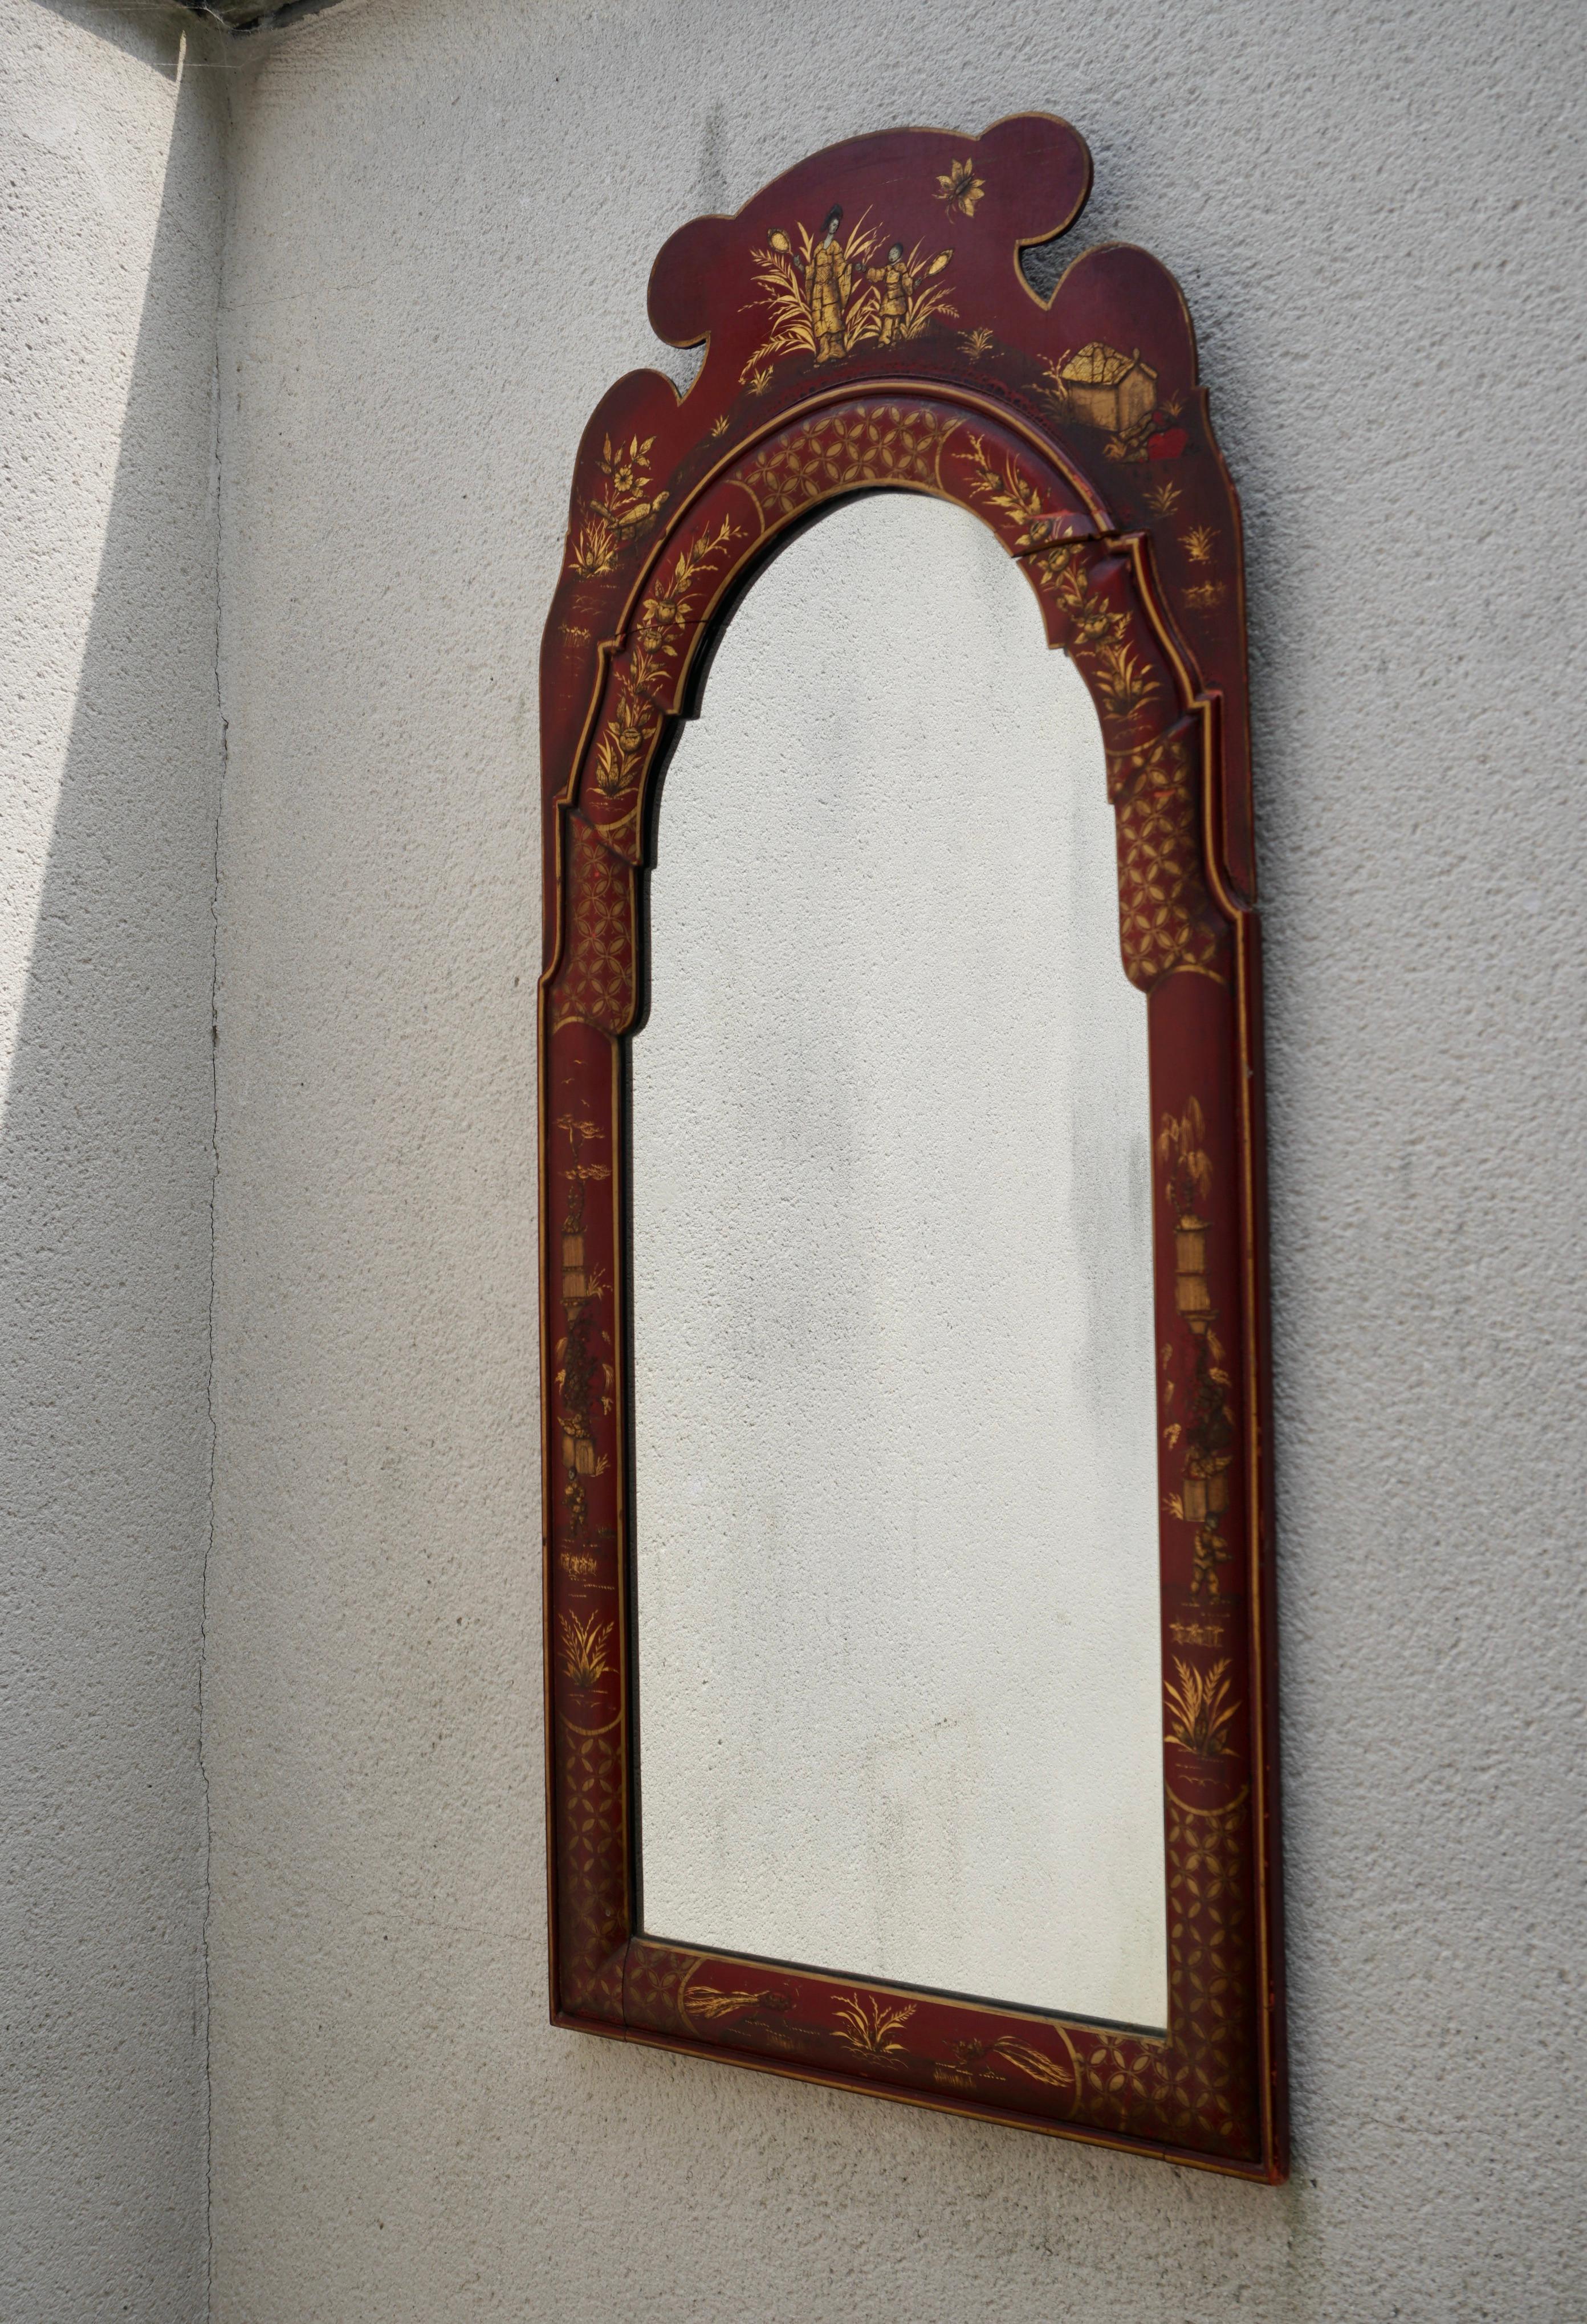 Il s'agit d'un beau miroir de chinoiserie peint à la main avec un style géorgien. Il représente des scènes pastorales peintes à la main sur un fond rouge chinois. Le cadre est en bois et non marqué. On pense qu'il est italien.